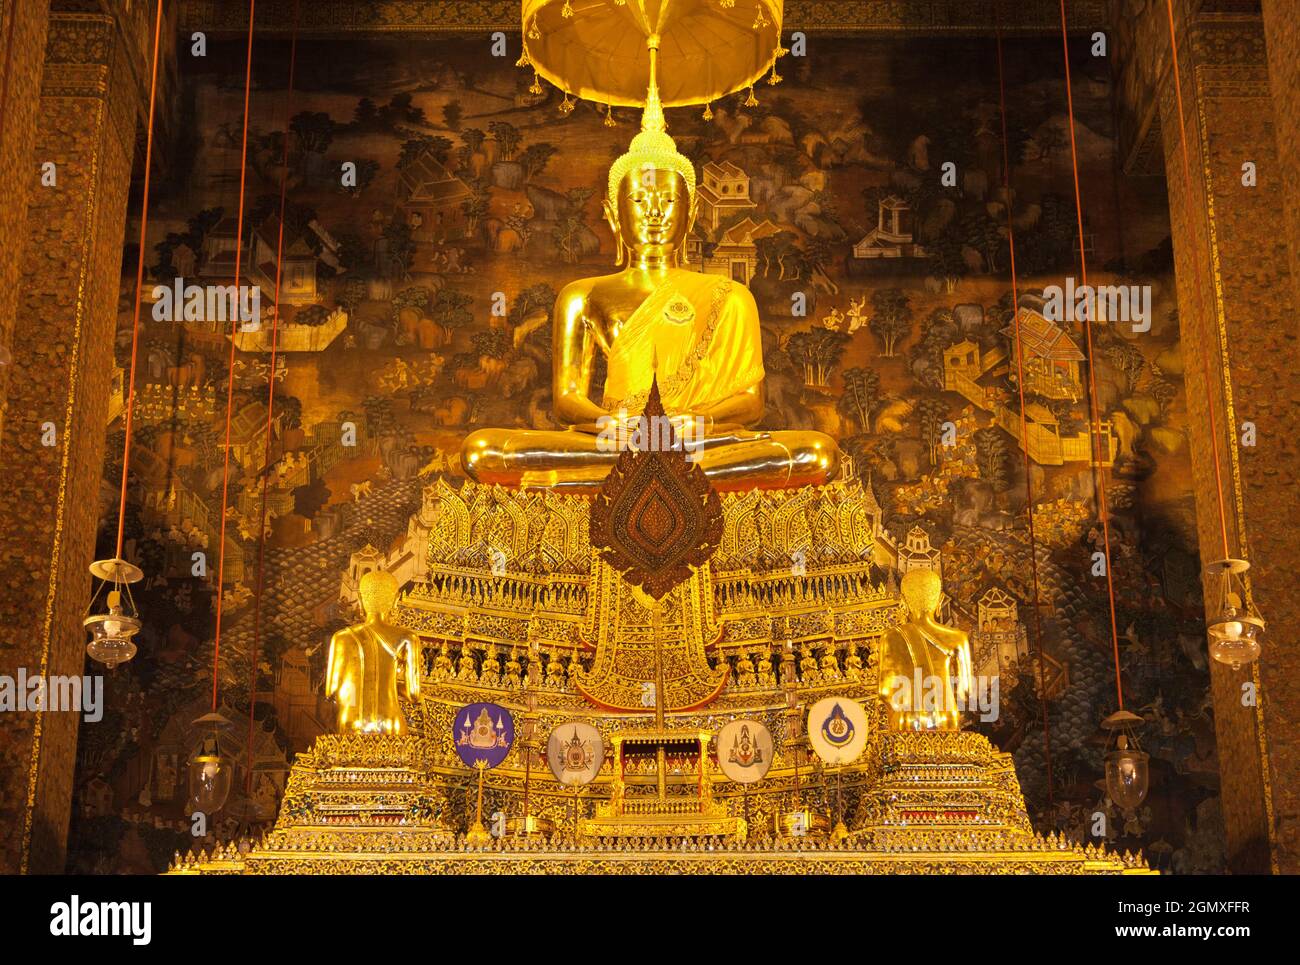 Bnagkok, Thailand - März 2011; Wat Pho ist ein großer buddhistischer Tempelkomplex im Phra Nakhon Bezirk, Bangkok, Thailand. Es befindet sich direkt an den s Stockfoto